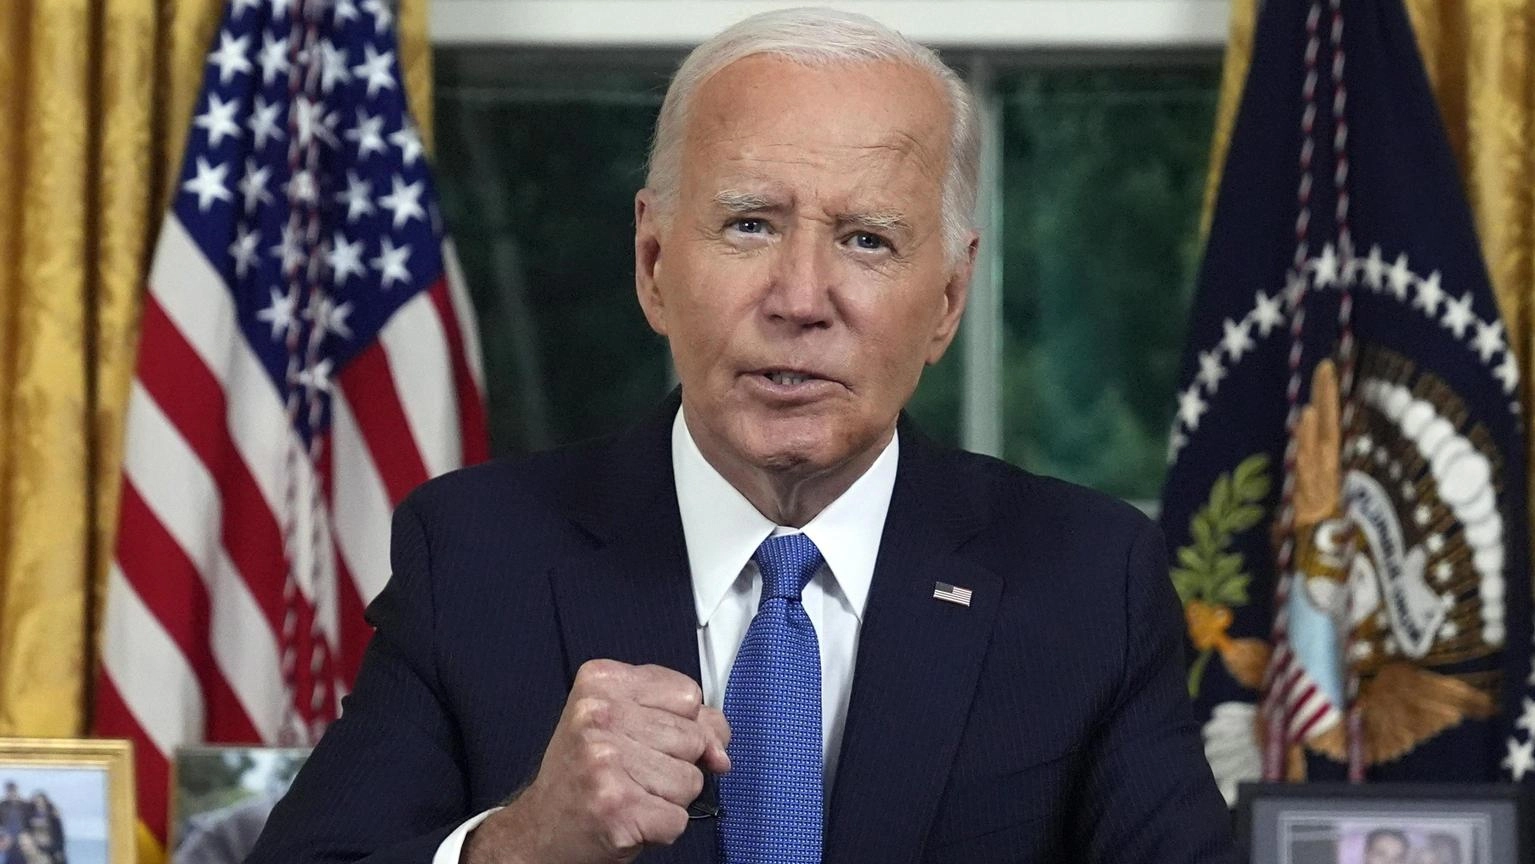 Il discorso del presidente Joe Biden dallo Studio Ovale: "Mi sono ritirato per difendere la democrazia"